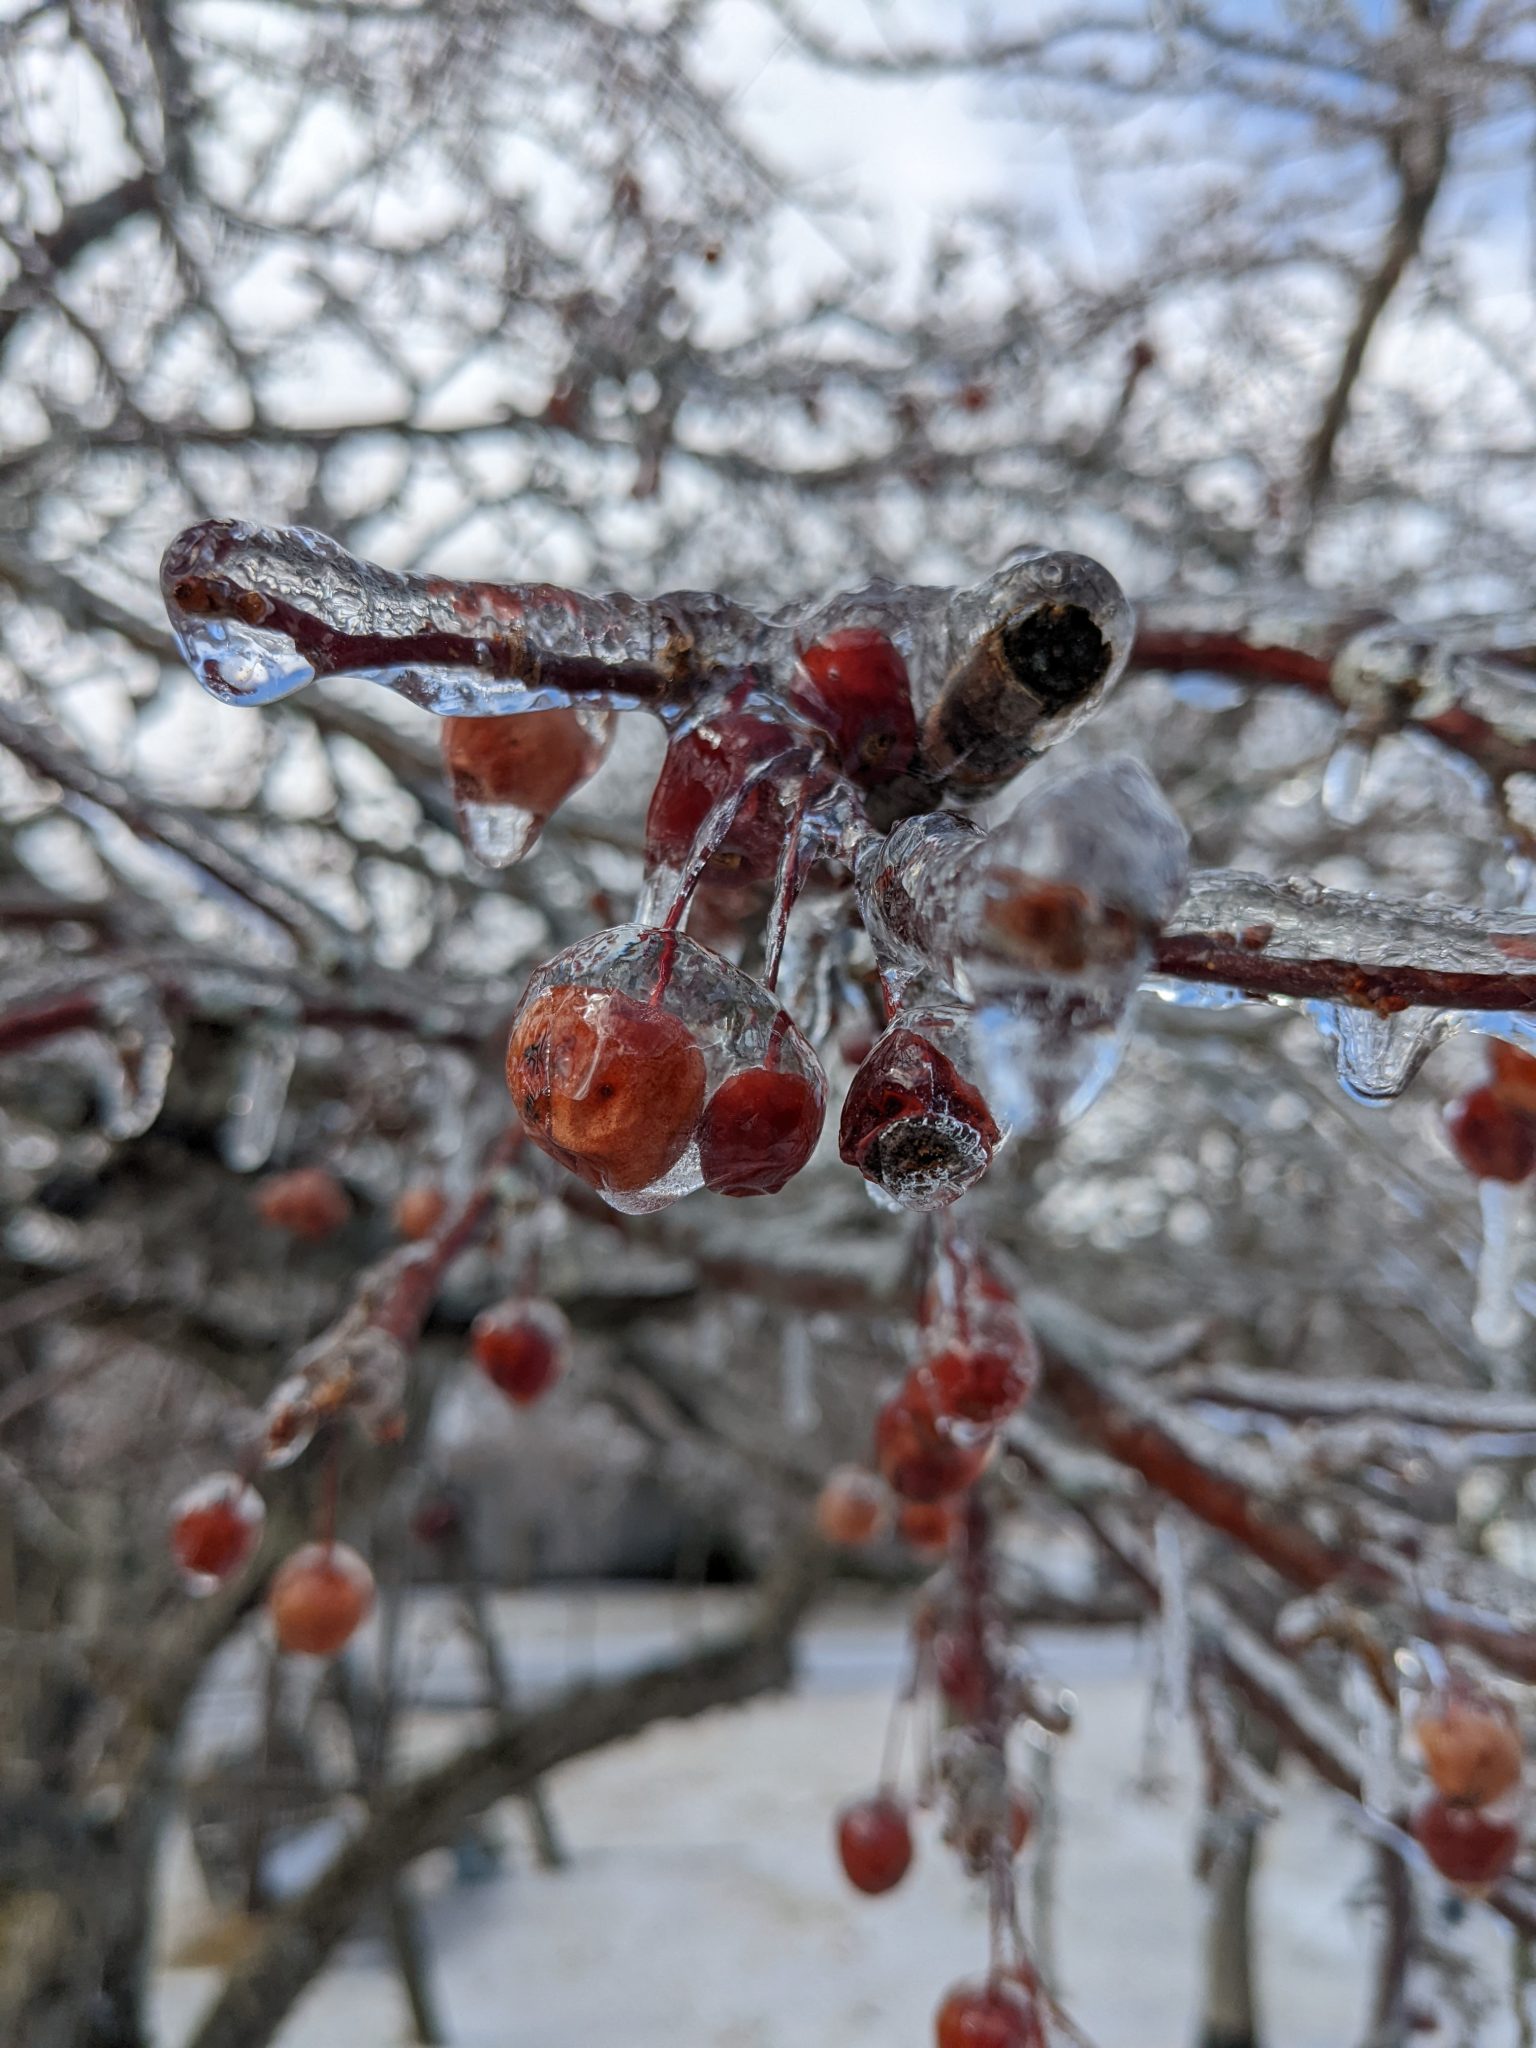 Last fall's cherries encased in ice